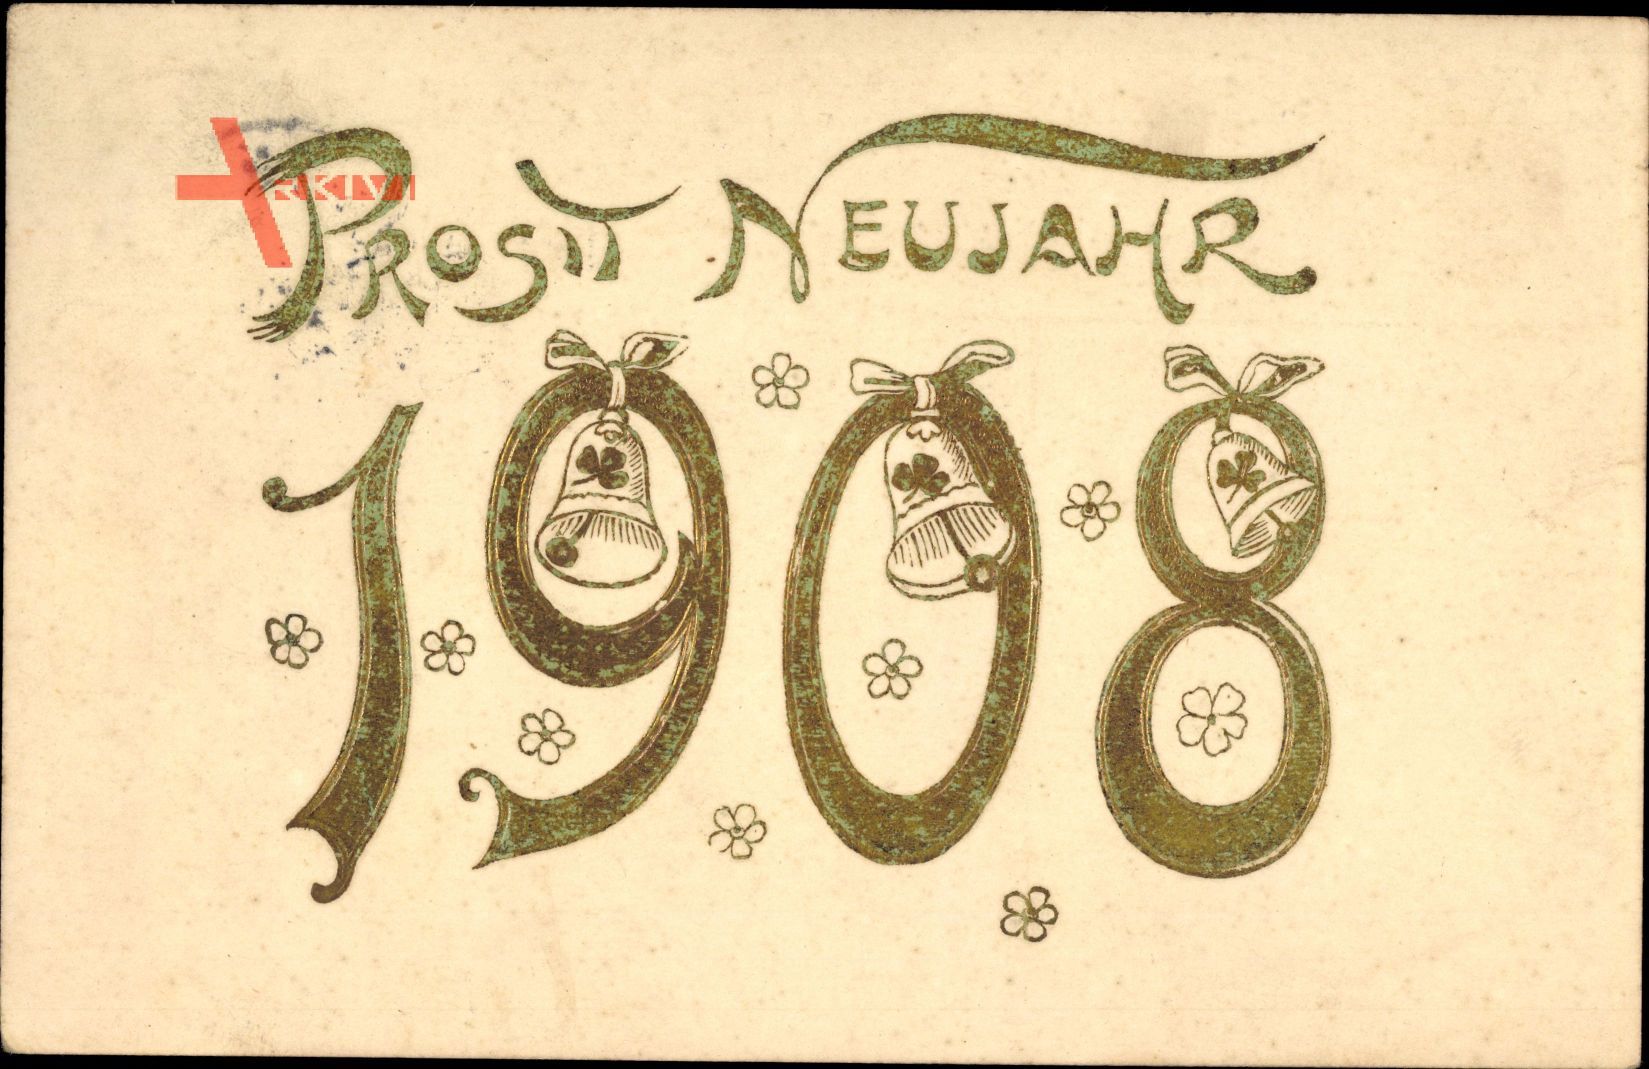 Glückwunsch Neujahr, Jahreszahl 1908, Glocken, Blumen